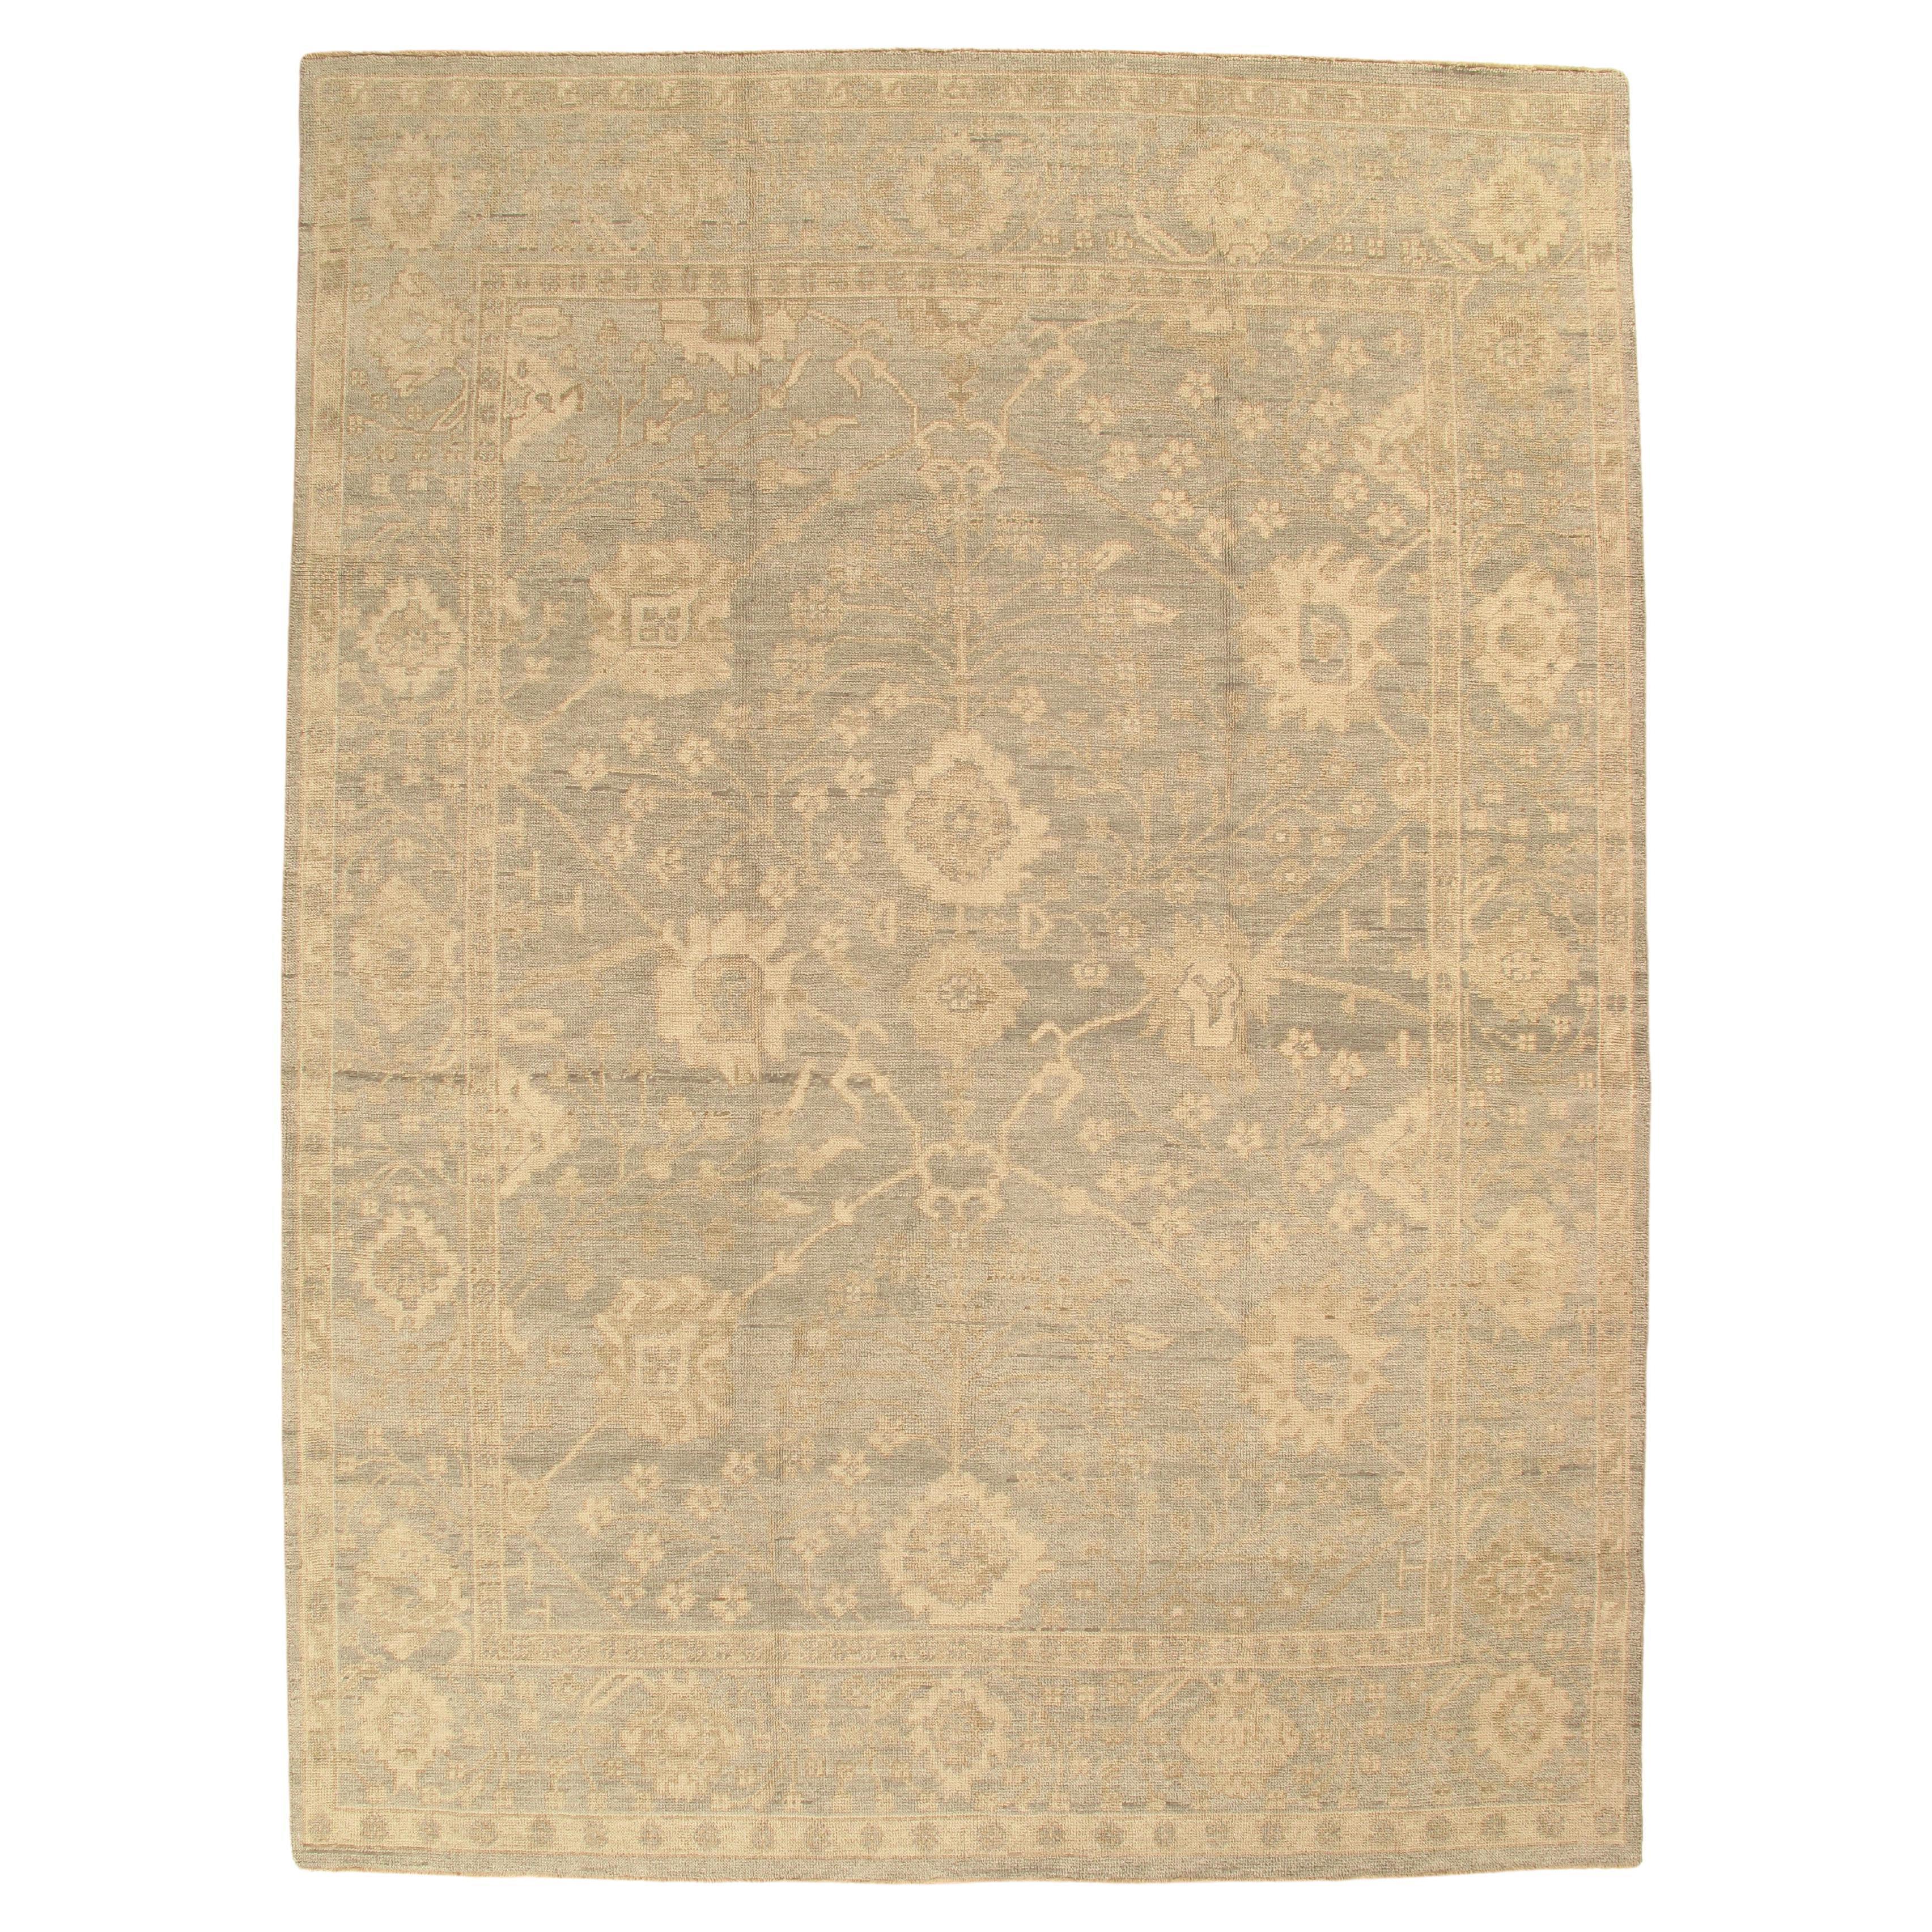 Vintage Oushak Carpet, Oriental Rug, Handmade Green Grey, Ivory, Saffron For Sale